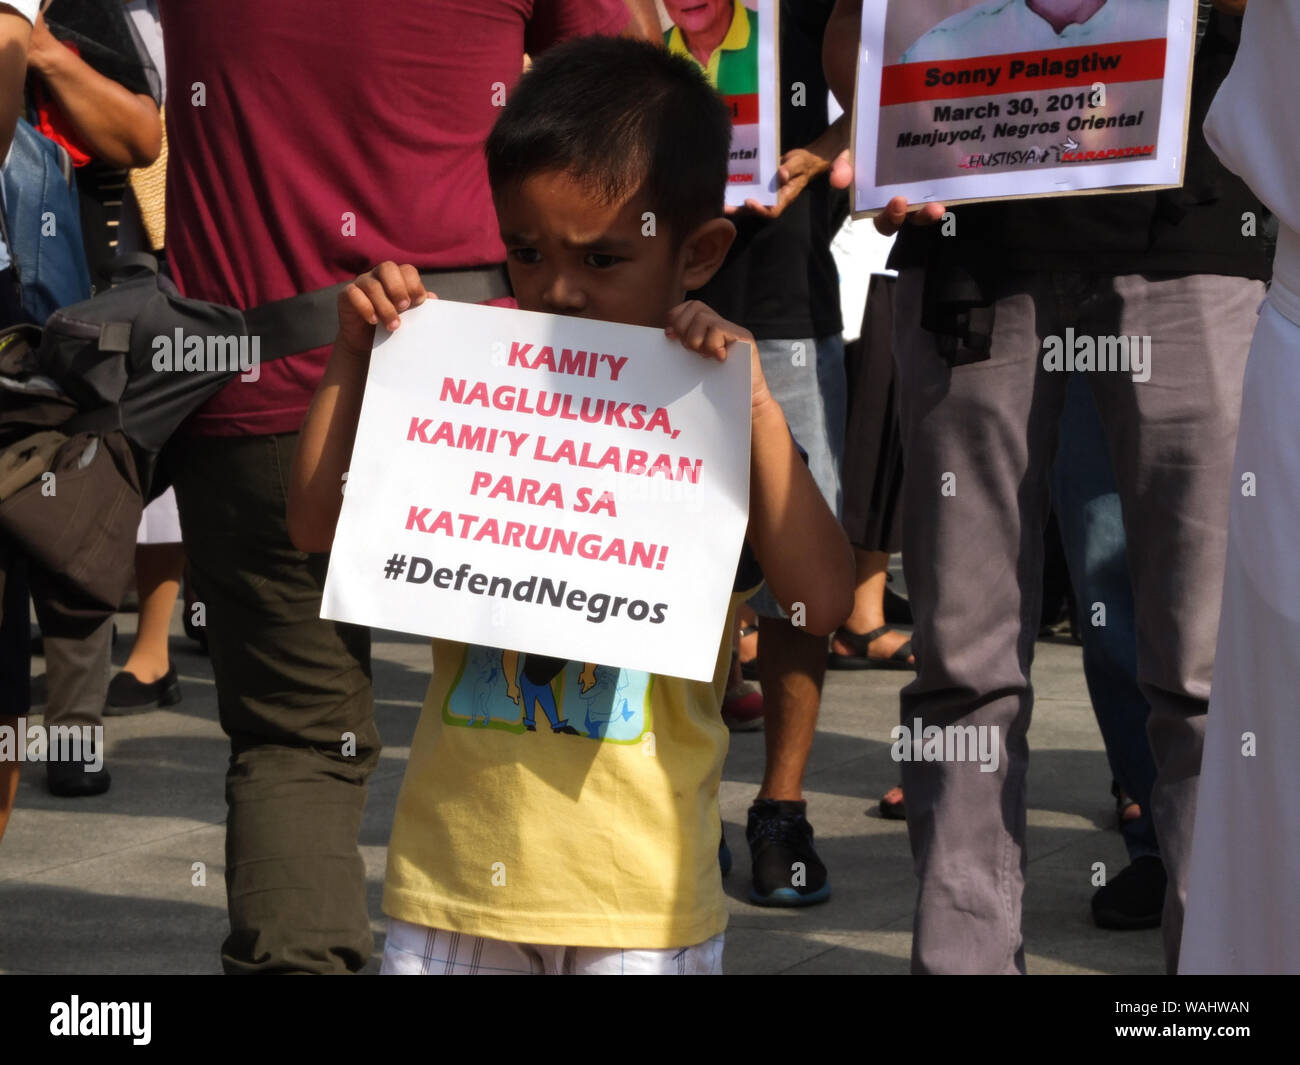 Un niño sostiene una pancarta durante la manifestación.La familia del asesinado víctimas de presuntas ejecuciones sumarias en la provincia de Negros organizaron una manifestación de protesta en Liwasang Bonifacio en Manila durante el día de duelo nacional y solidaridad para poner fin a las matanzas en la región. Foto de stock